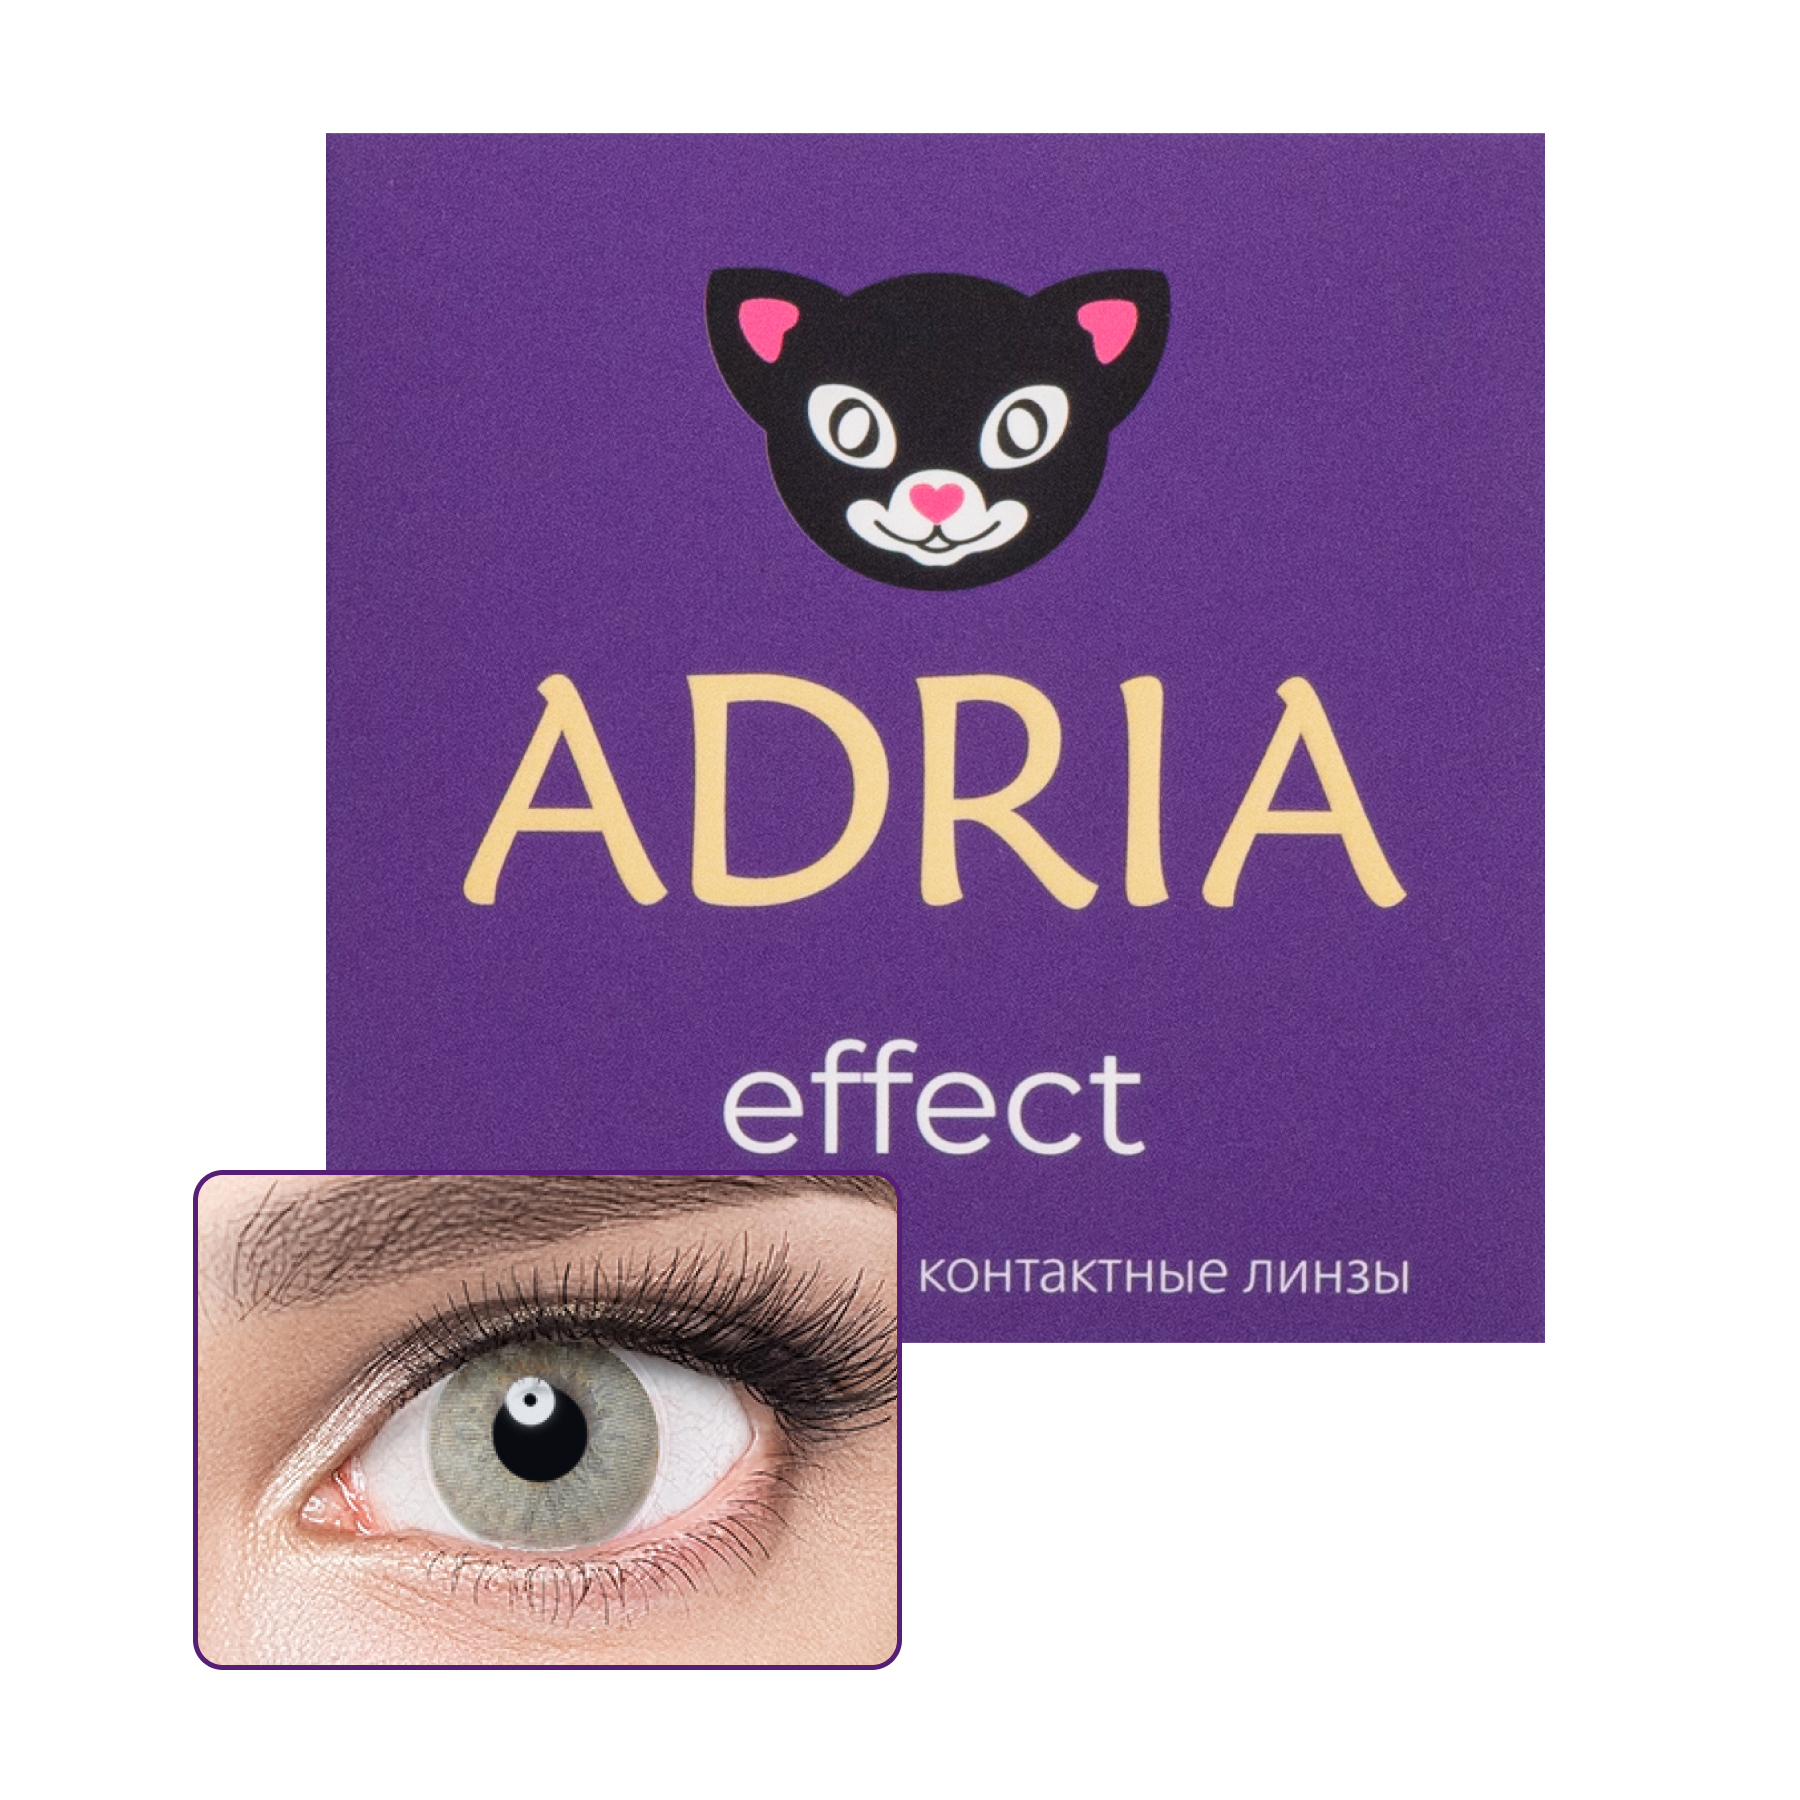 Effect color 2 линзы, Линзы контактные Adria Effect color 2 pack R 8, 6 цвет IVORY PWR -10, 00  - купить со скидкой